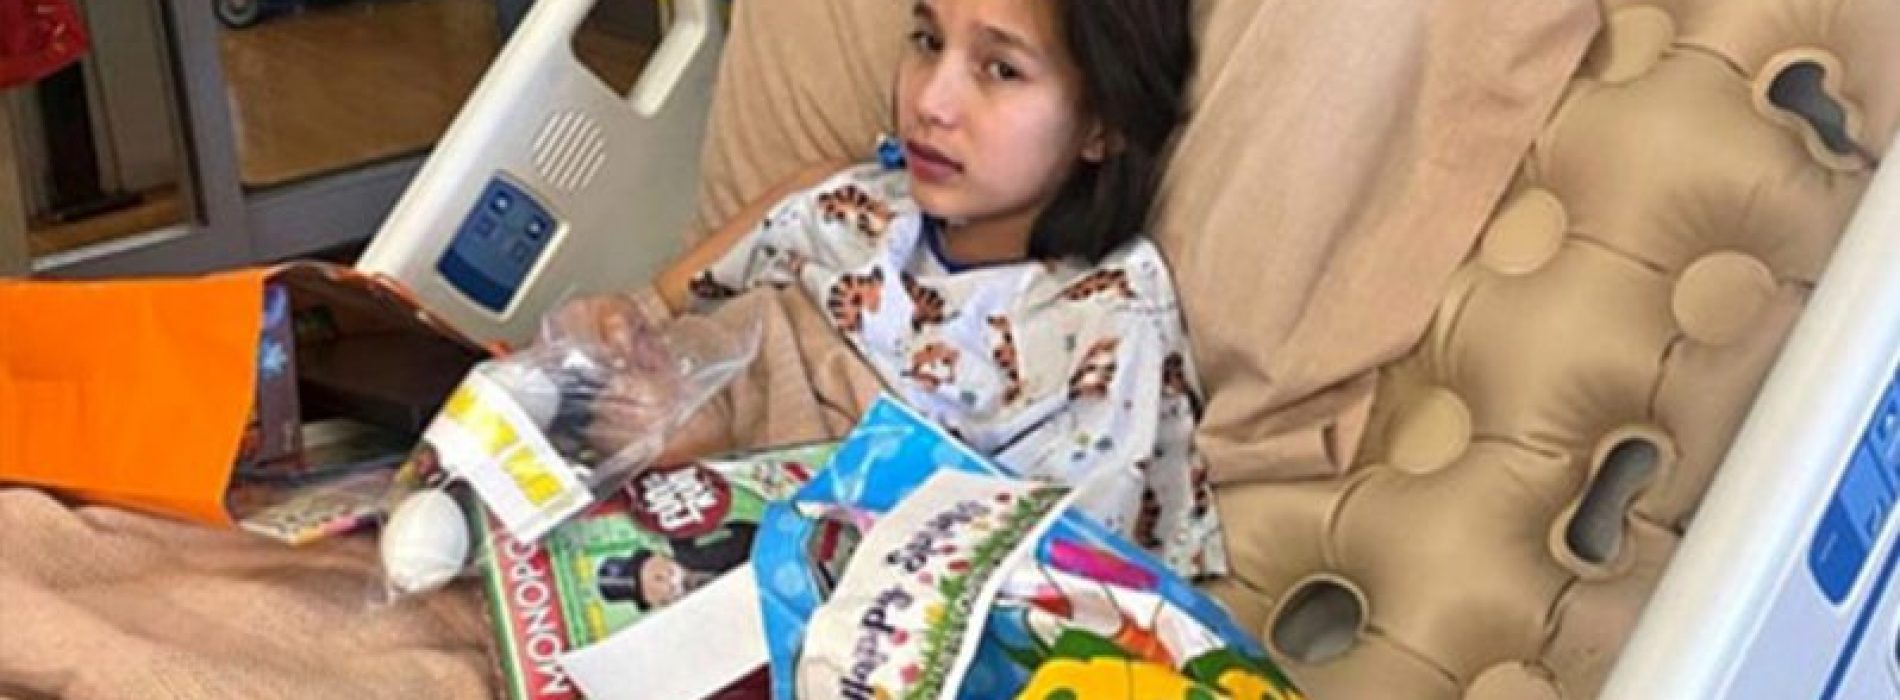 “Ik stierf voor 2 minuten”: 12-jarig meisje herstelt van COVID na hartfalen